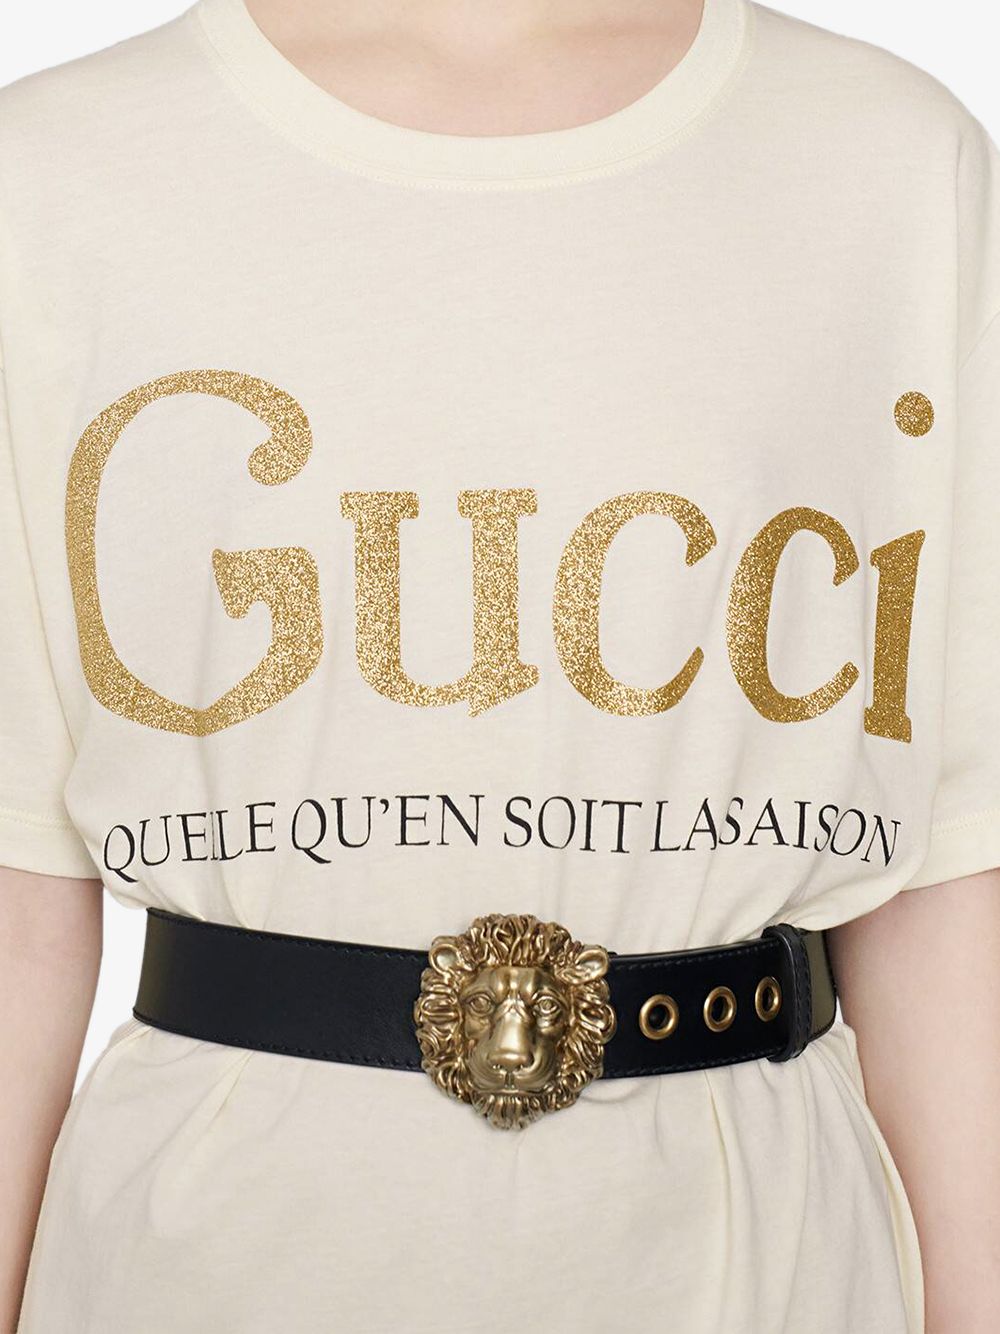 фото Gucci футболка с принтом и блестками